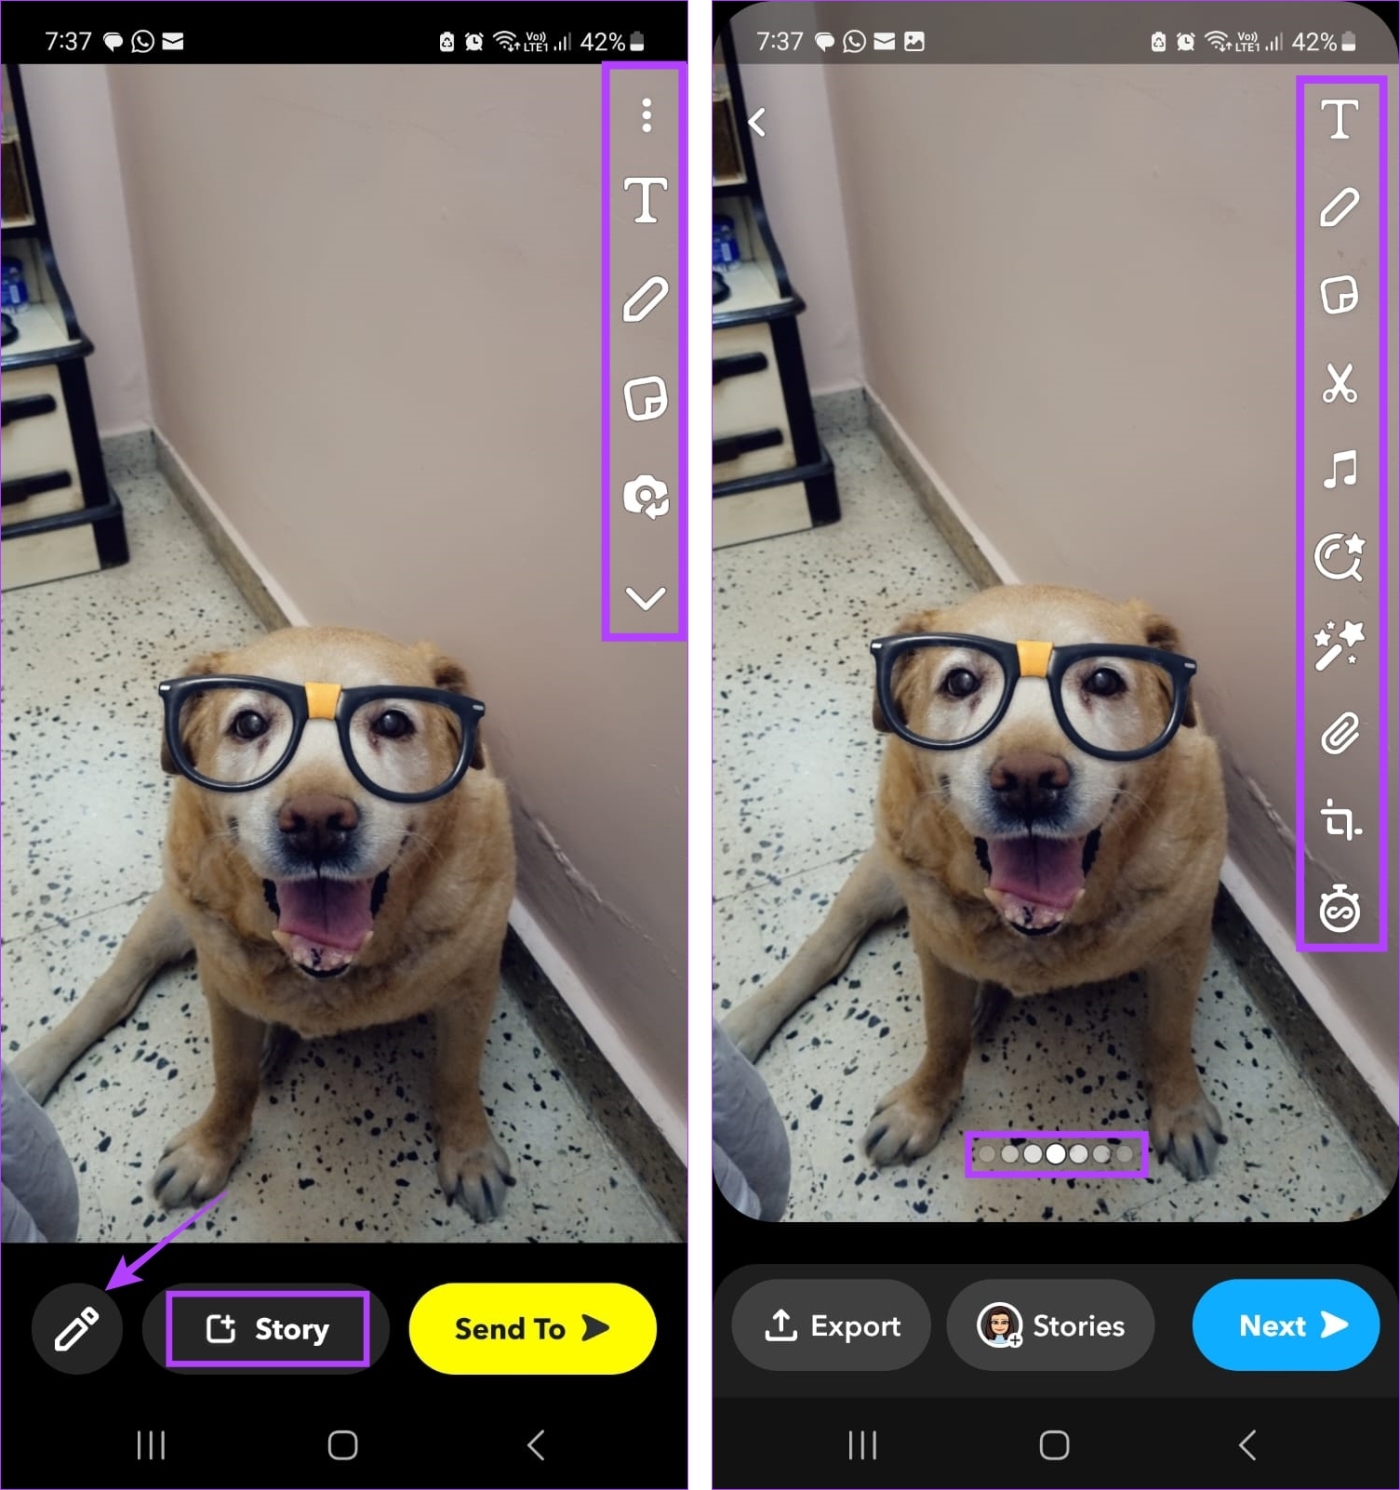 Como adicionar fotos do rolo da câmera ao Snapchat Story